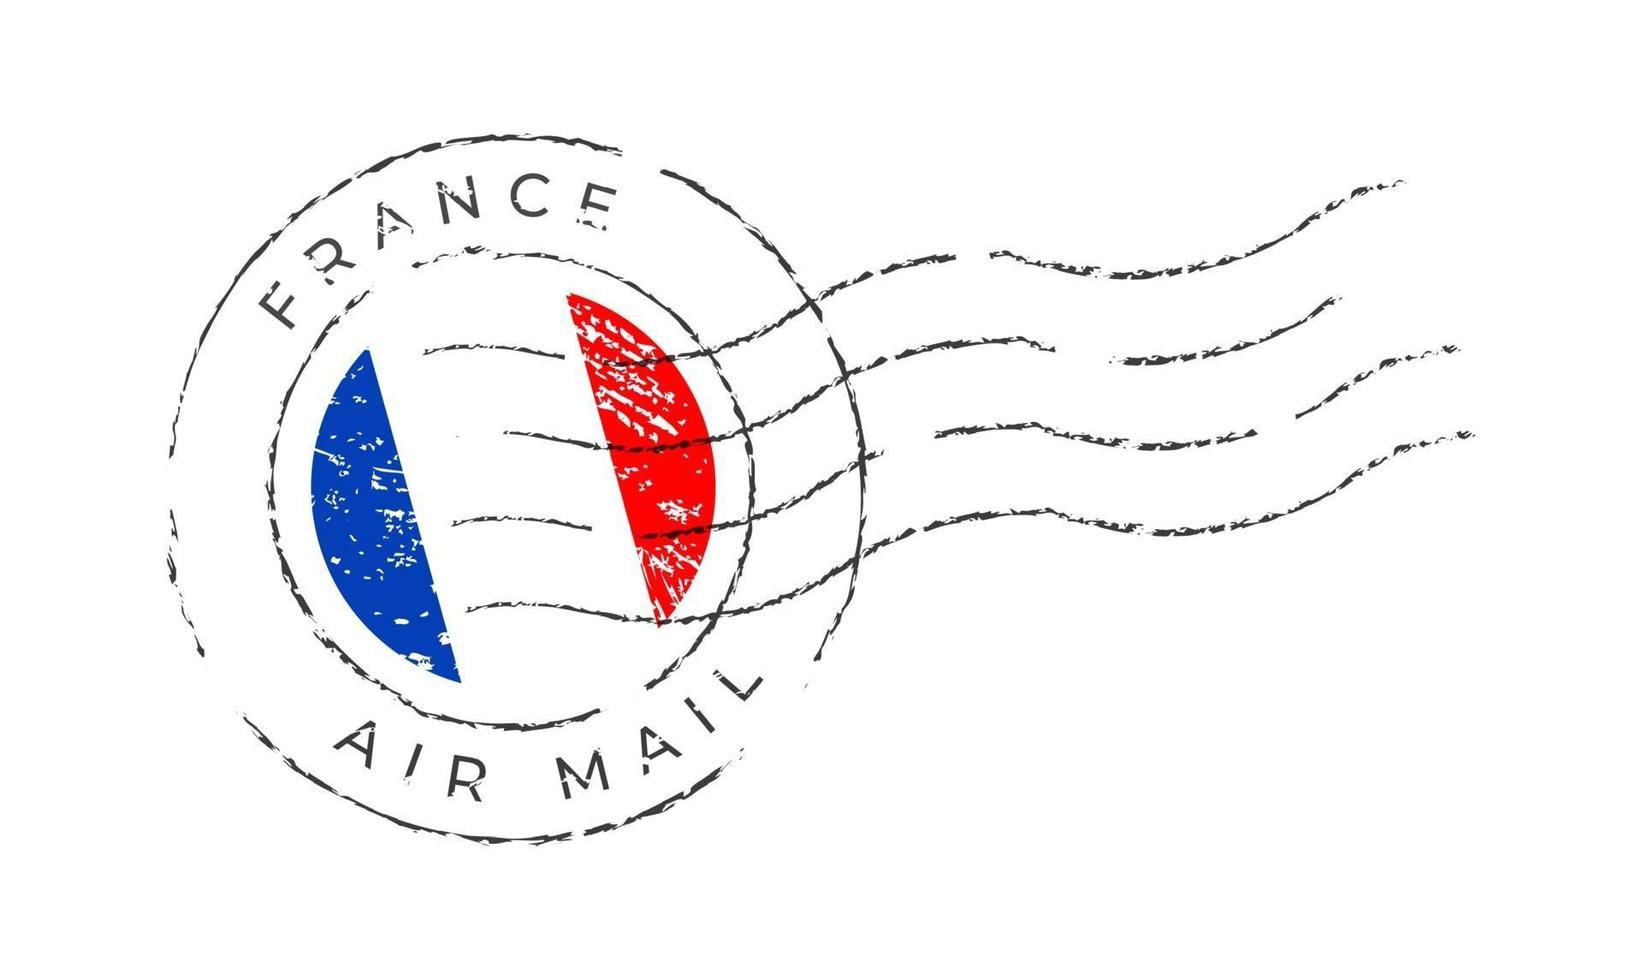 fransk frimärke vektor